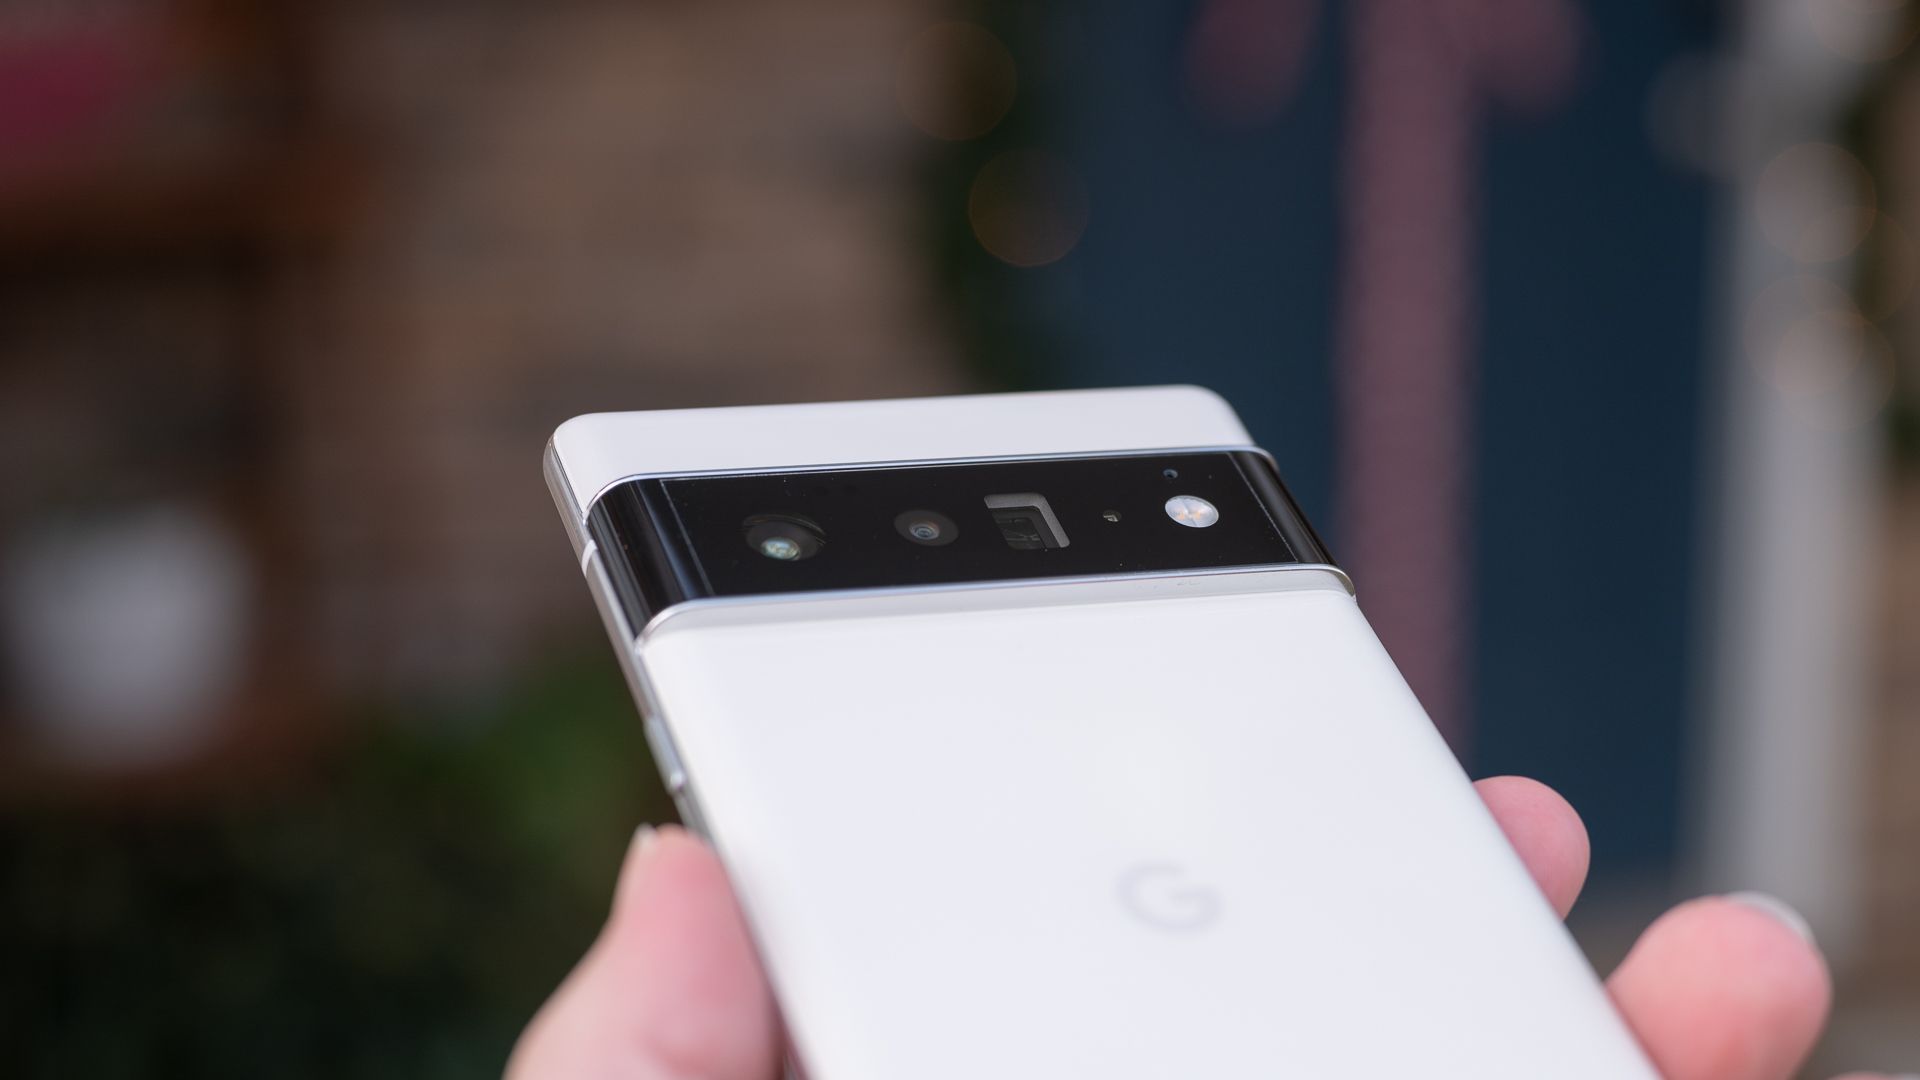 Google Pixel 6 Pro's camera bump